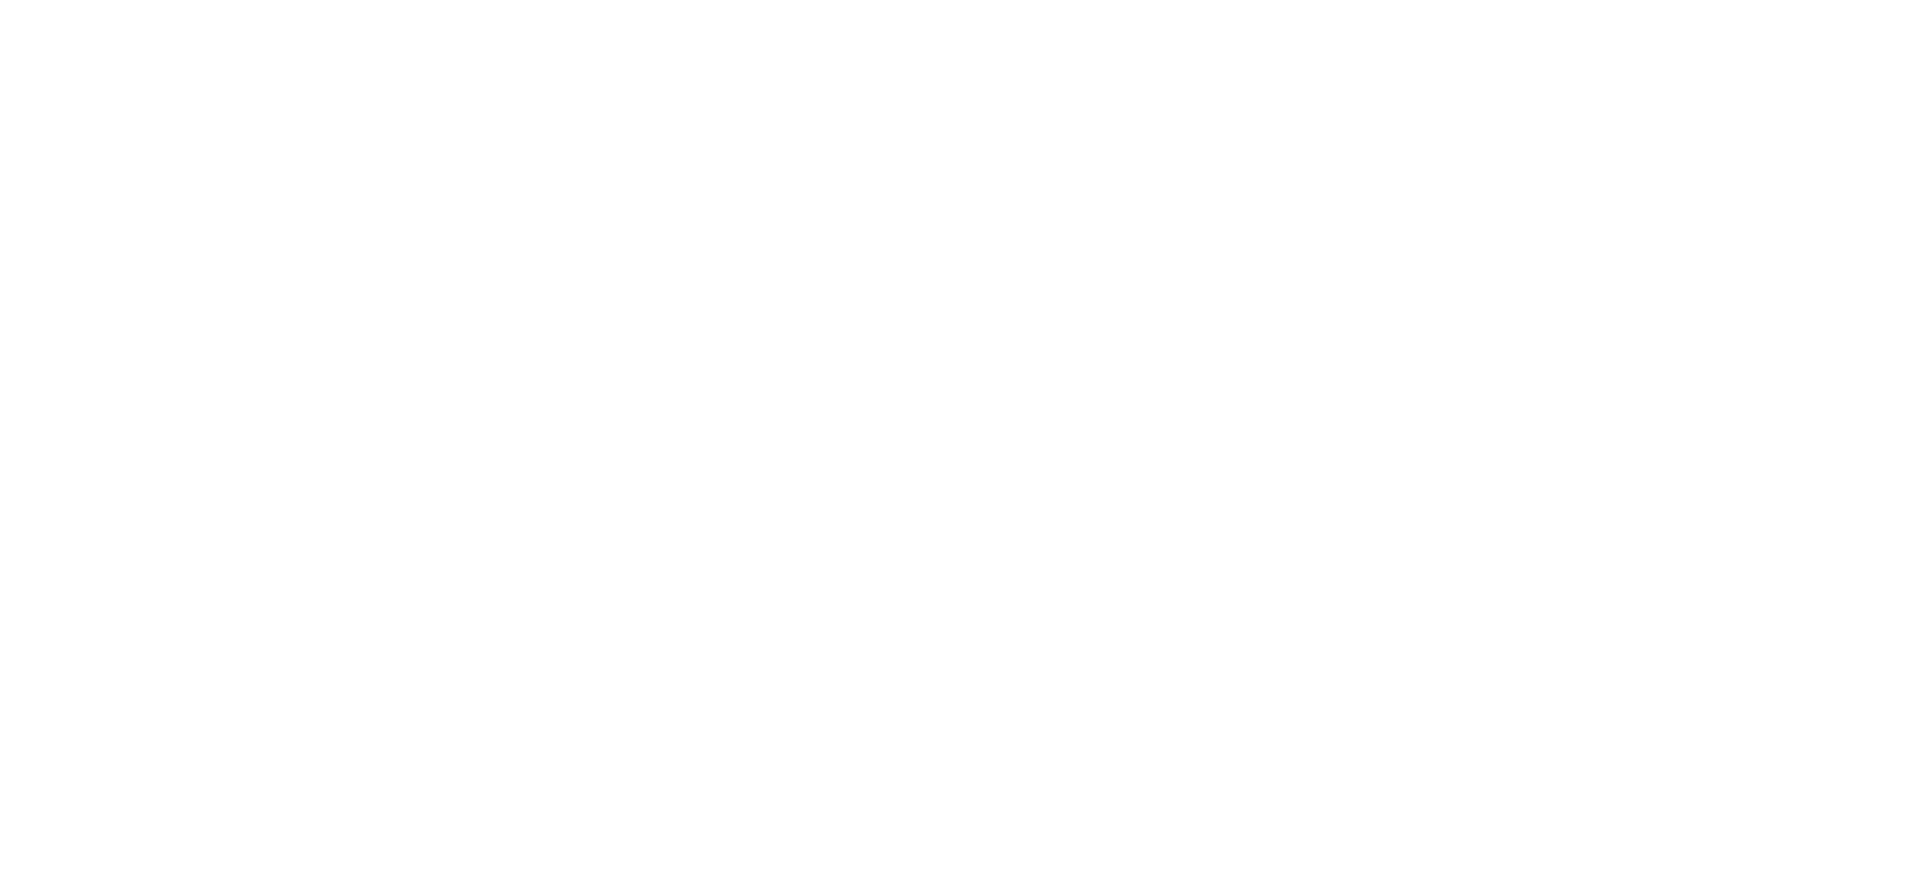 Графика в серо-коричневых тонах представляет собой коллаж, состоящий из слоев. На переднем плане короткая рука, которая заканчивается на 10 сантиметров ниже локтя. Рядом на столе стоит компьютер с черно-белым изображением двух собак, далее далее чёрный бионический протез руки из пластика и вытянутая вверх открытая человеческая ладонь. Справа от рамки - название симпозиума на трех языках. На заднем плане - пустыня с камнями и кактусами. Между скалами и кактусами растет дерево, над которым видна радуга.